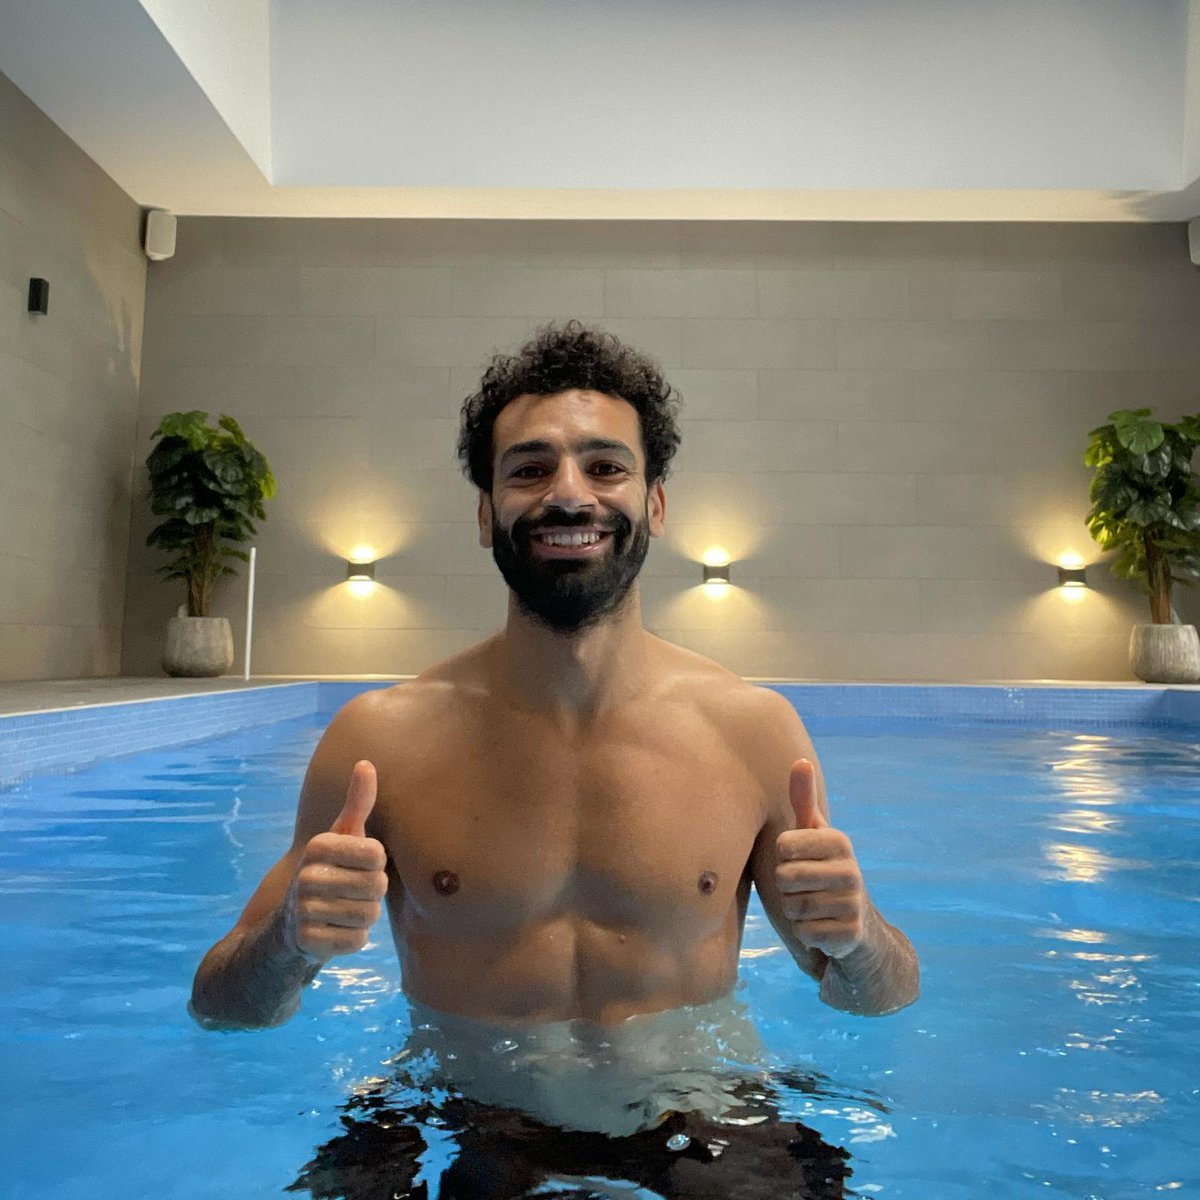 Mohamed Salah on X: "https://t.co/Ke8TCM2Eno" / X